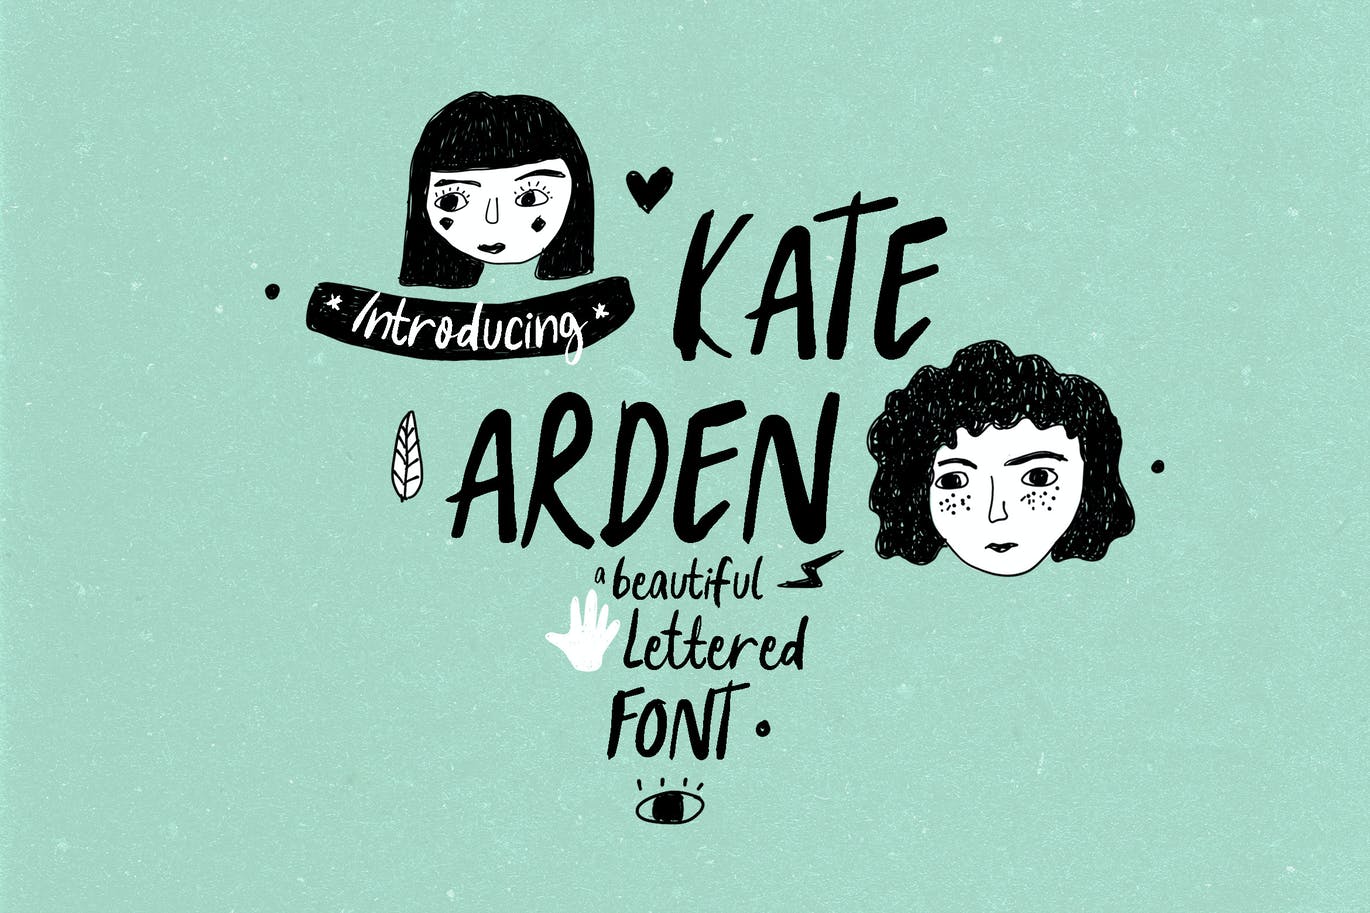 独特而美丽的英文手写字体 Kate Arden 设计素材 第1张